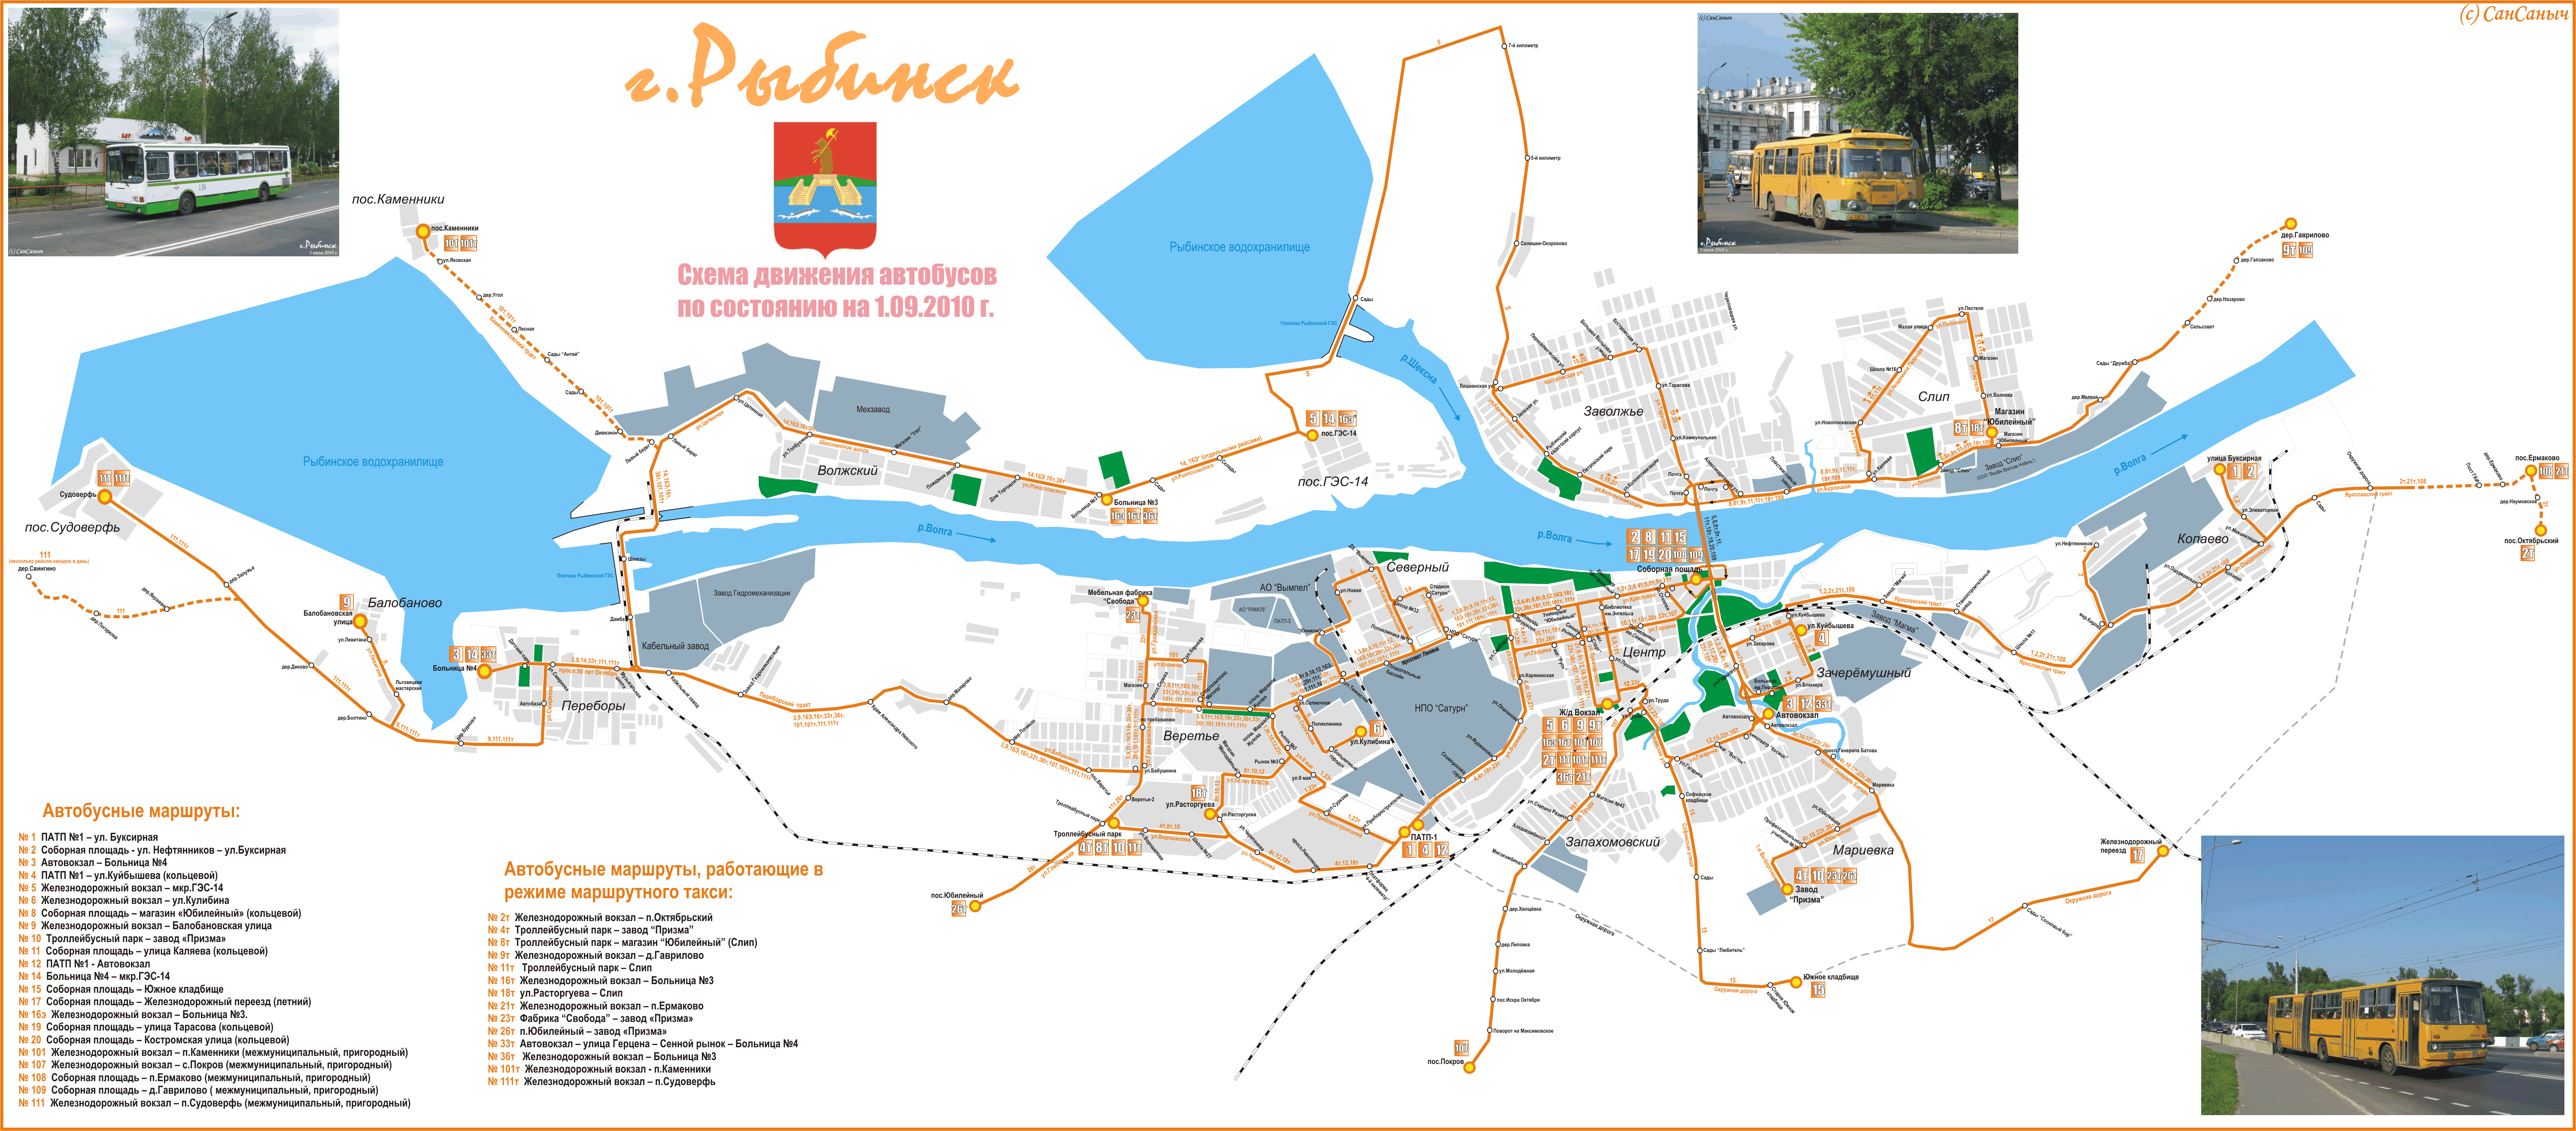 Рыбинск город на карте Рыбинск город на карте. Туристическая карта Рыбинска. Рыбинск план города. Карта схема Рыбинска.